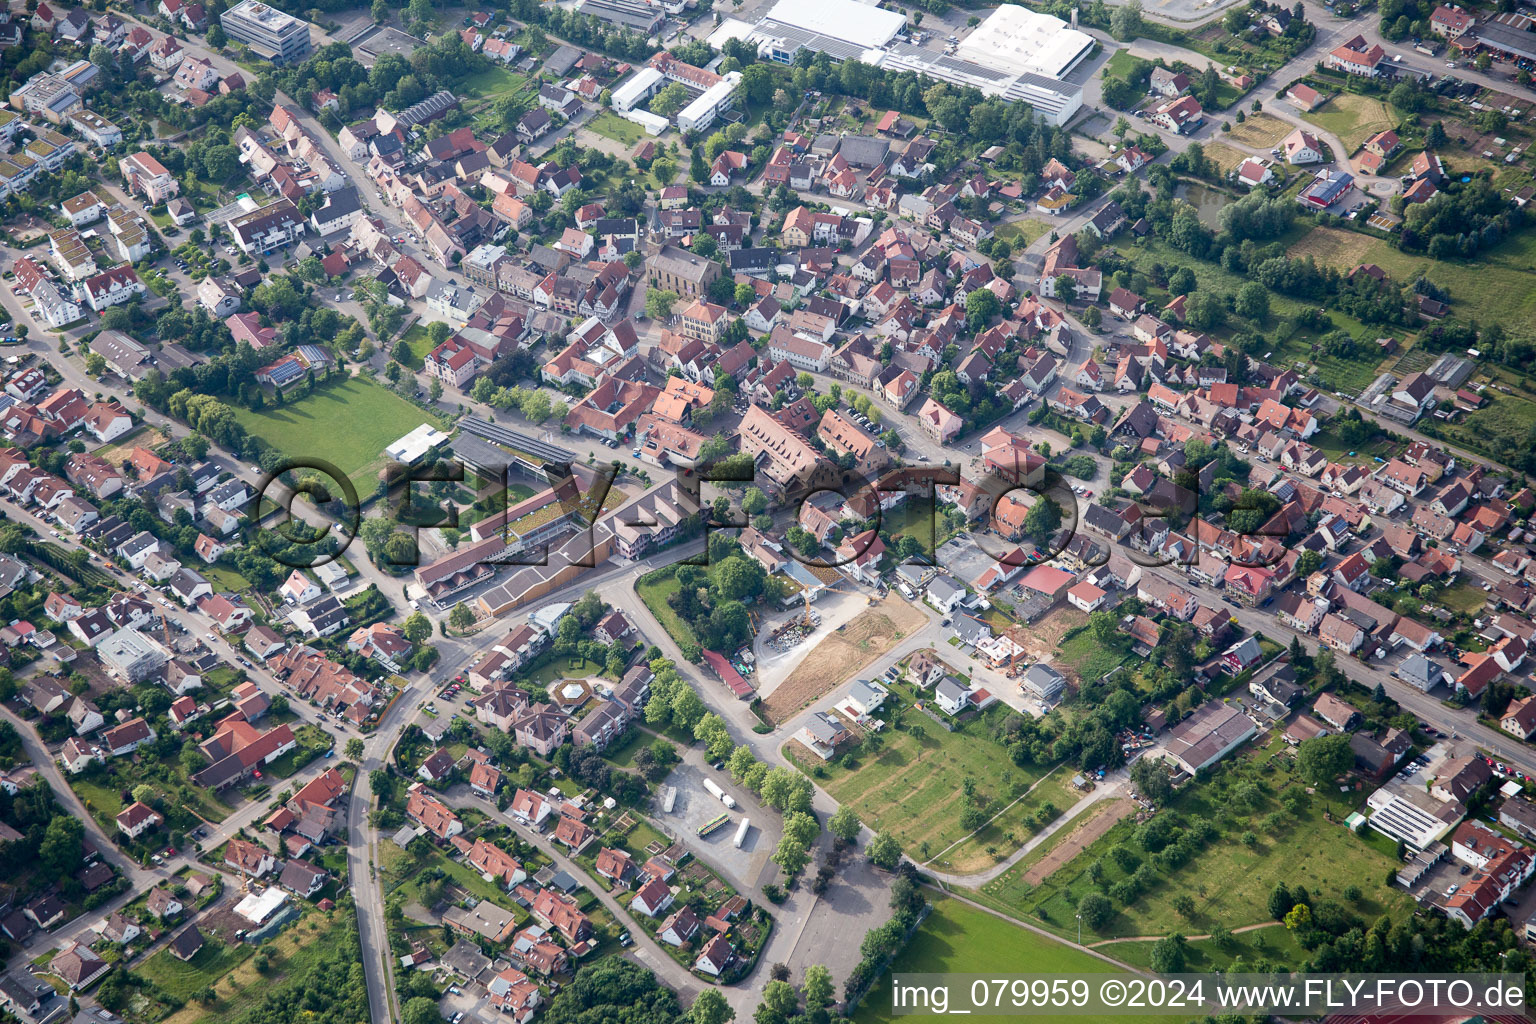 Luftbild von Ortsansicht der Straßen und Häuser der Wohngebiete in Güglingen im Bundesland Baden-Württemberg, Deutschland